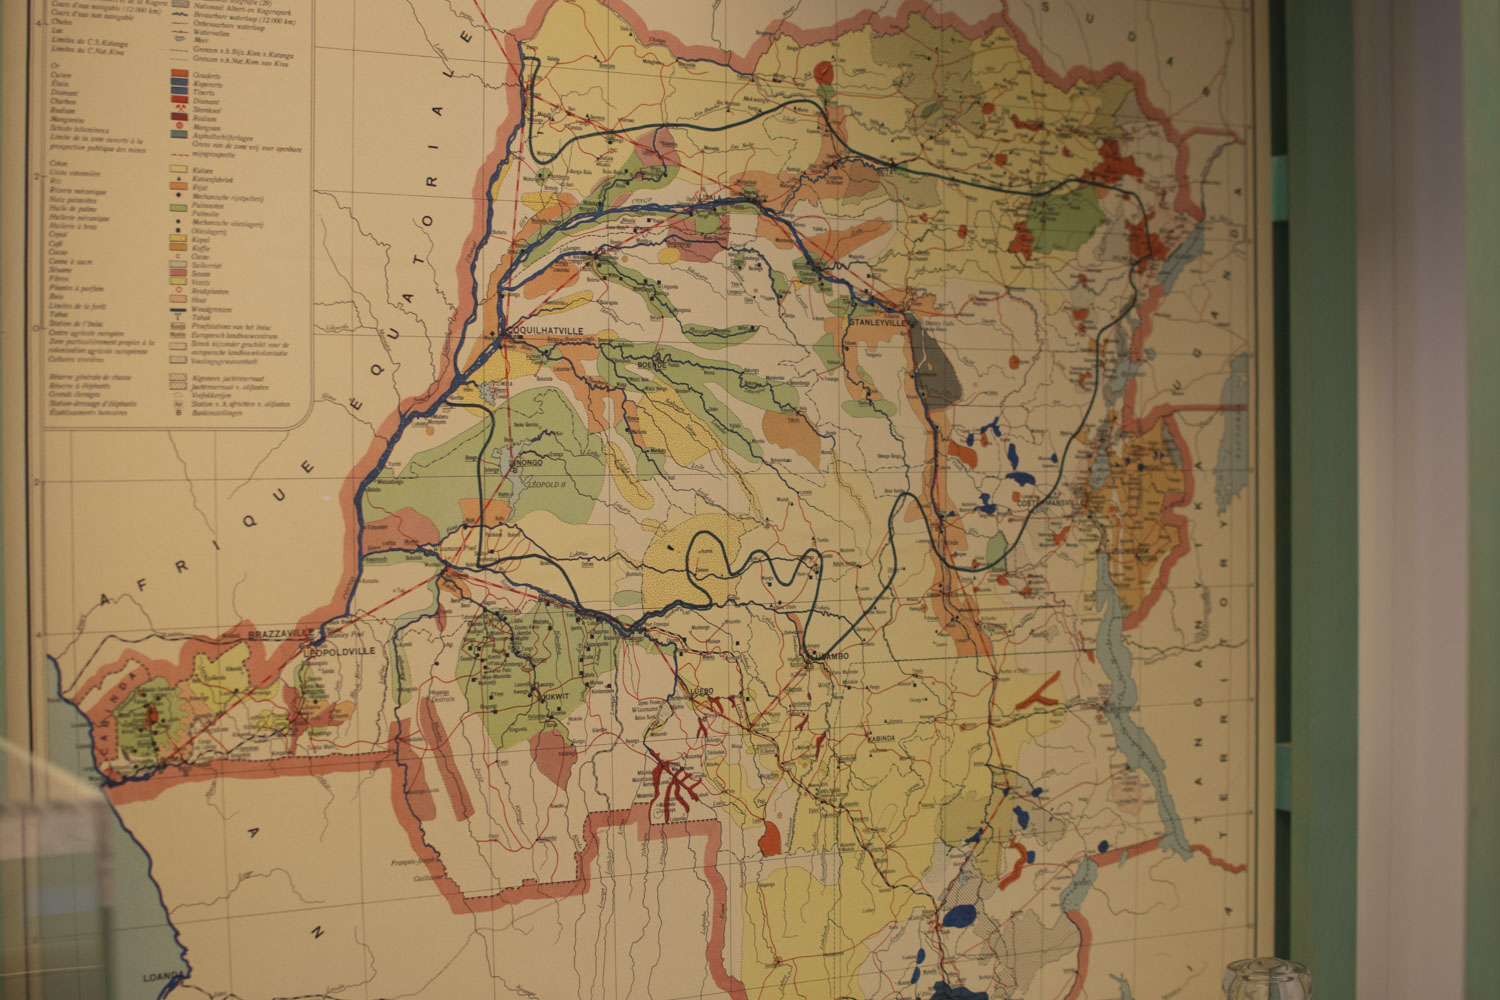 La carte du Congo permet de ne pas faire l’impasse sur la colonisation de ce pays africain dans le développement de la Belgique : en exploitant les richesses minières de la colonie, la Belgique s’est considérablement enrichie 